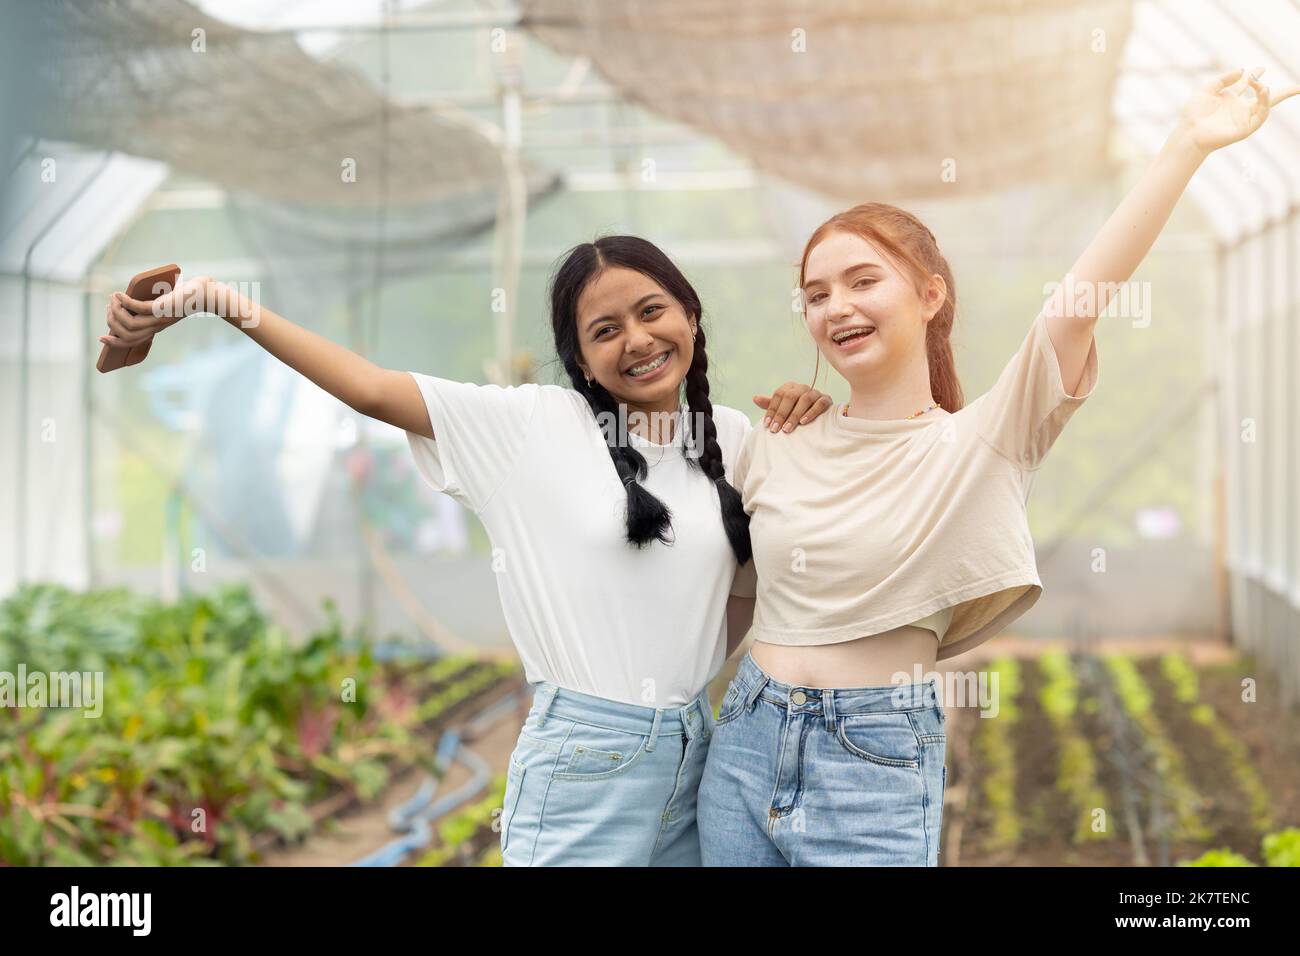 Zwei junge Teenager Mixrace Freund glücklich fröhlich zusammen in Landwirtschaft Bauernhof Hintergrund Stockfoto